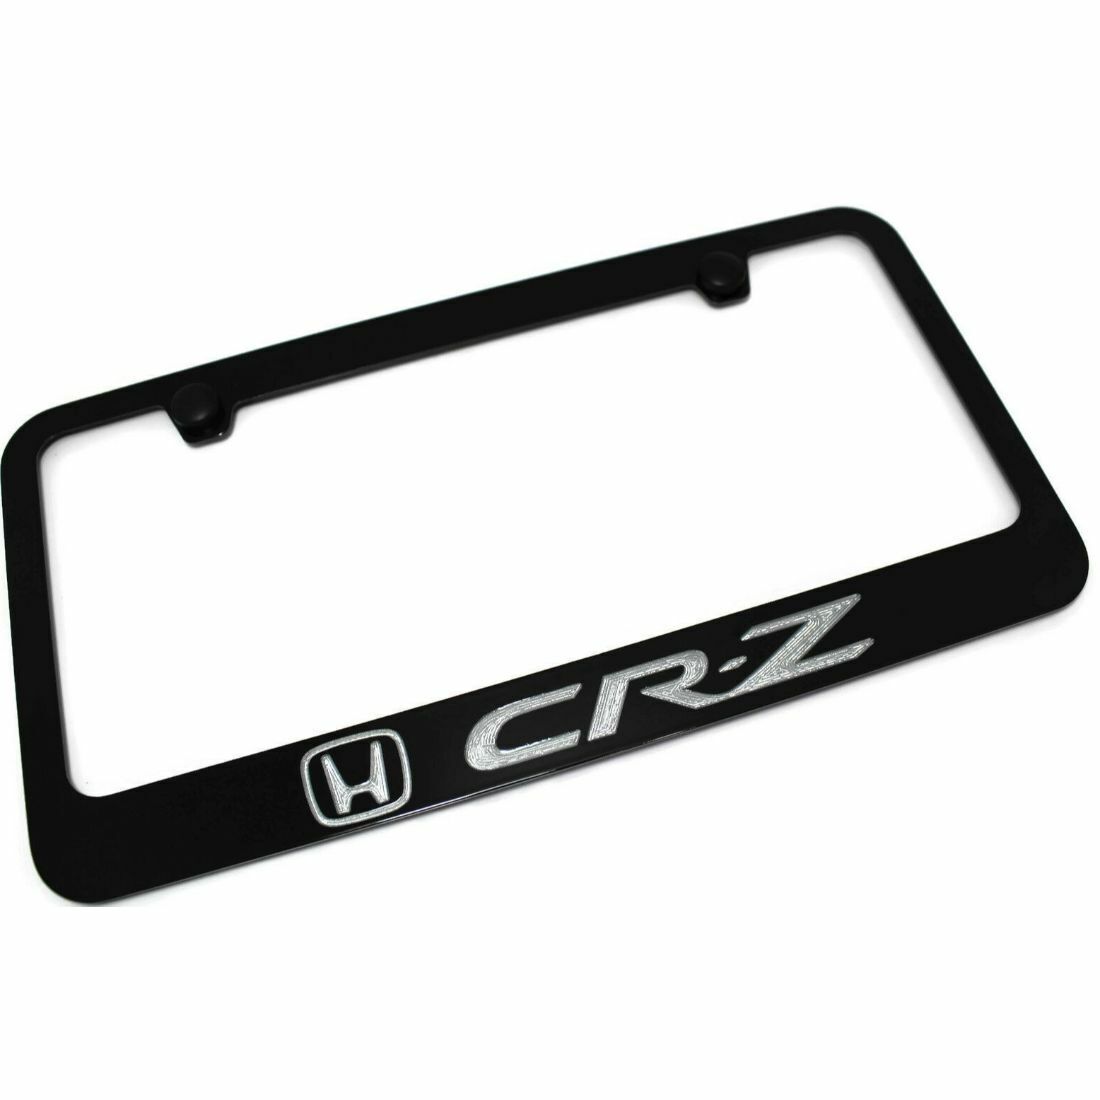 Honda CR-Z CRZ License Plate Frame Number Tag Engraved Black Powder Coated Zinc